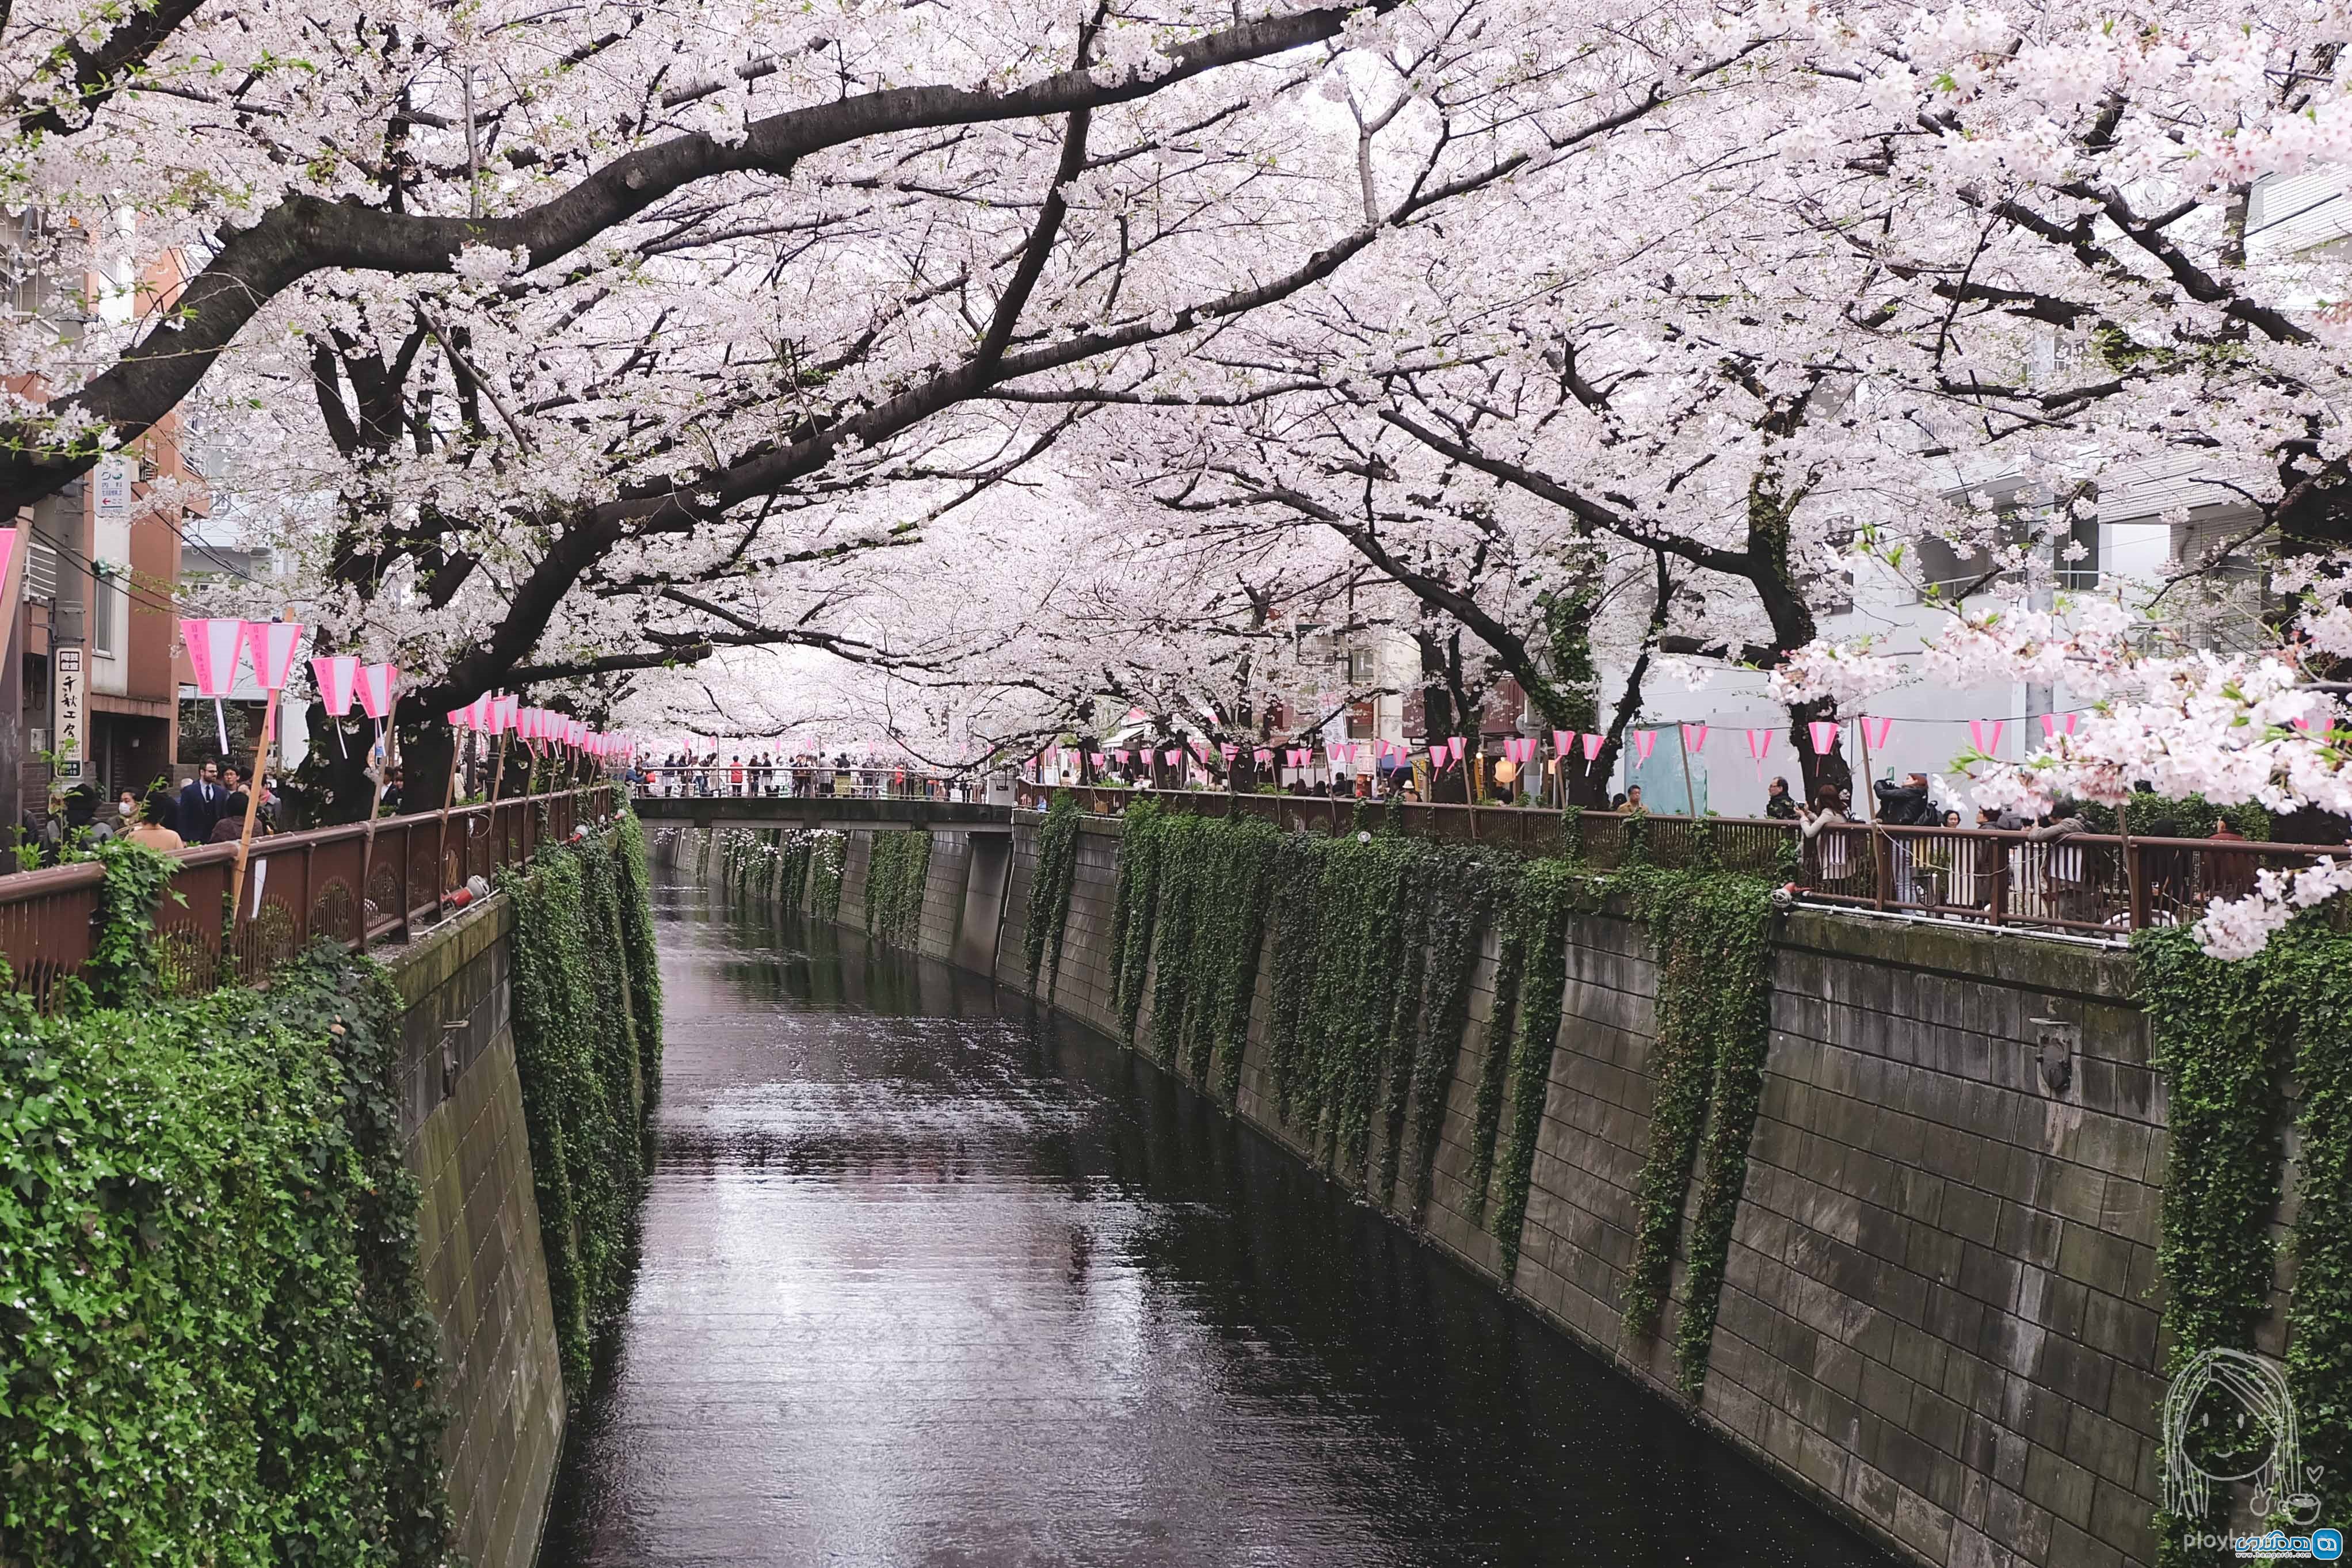 دلیل سی و پنجم : شکوفه های ژاپنی